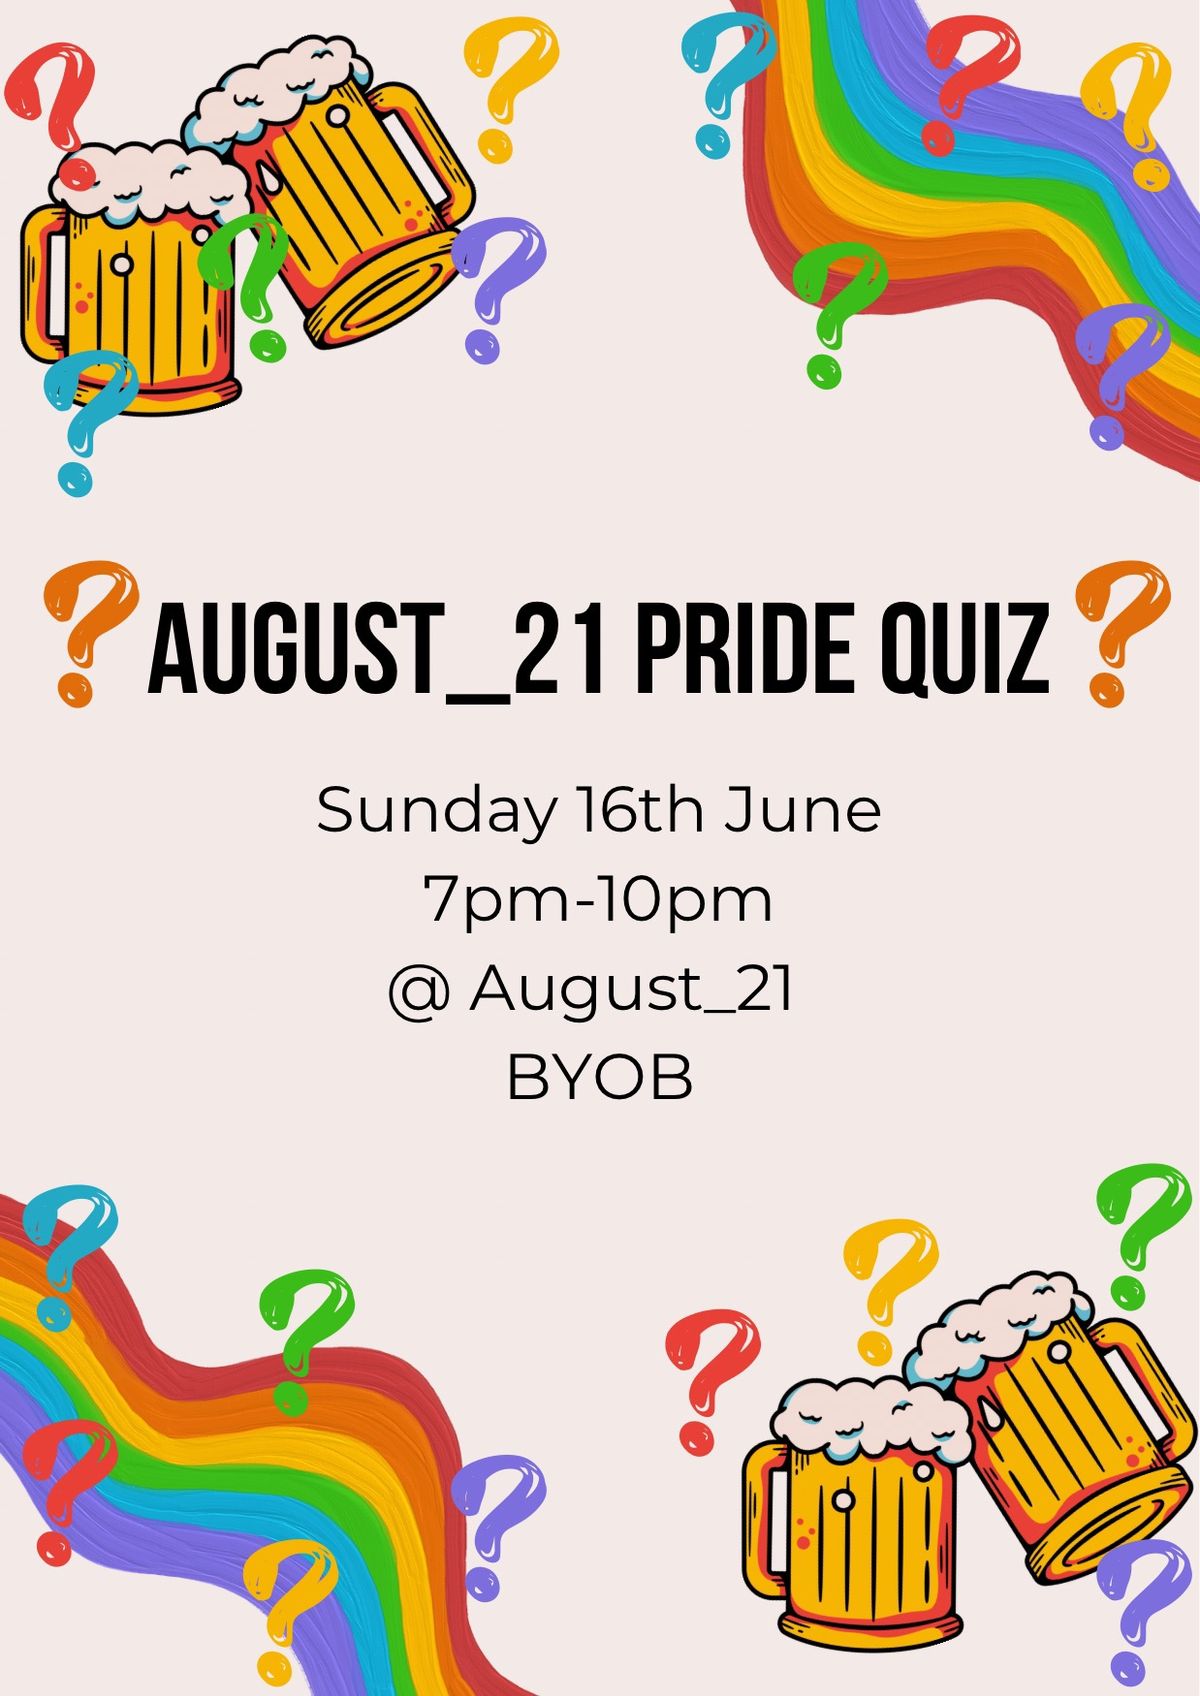 August_21 Pride Quiz